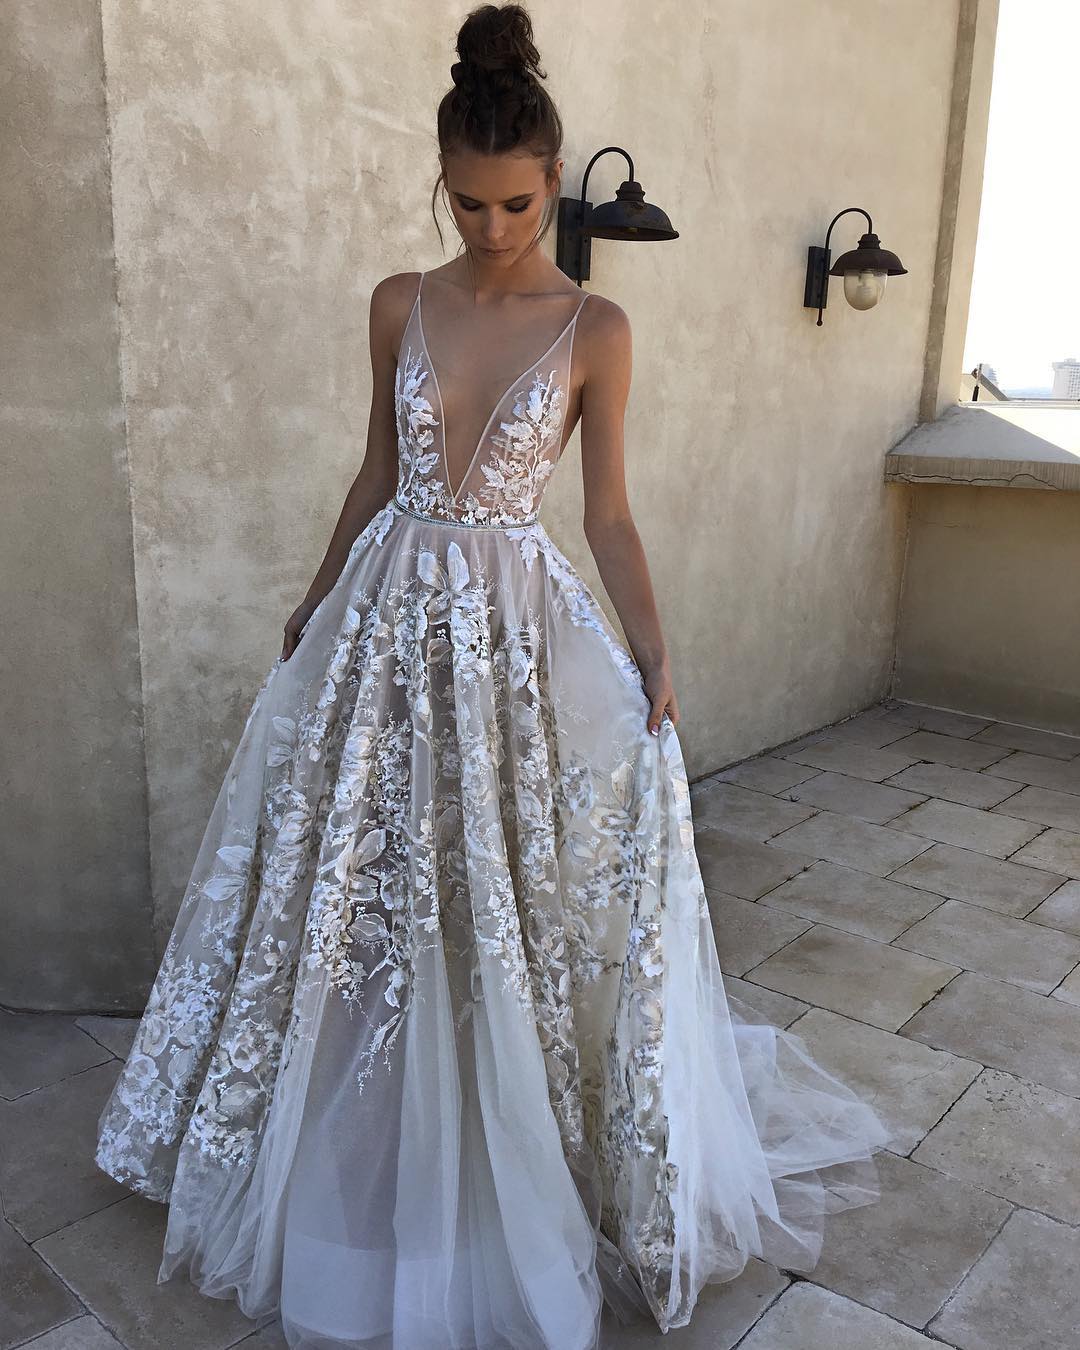 당신의 결혼식을위한 꿈의 드레스는 파스텔 색상입니다